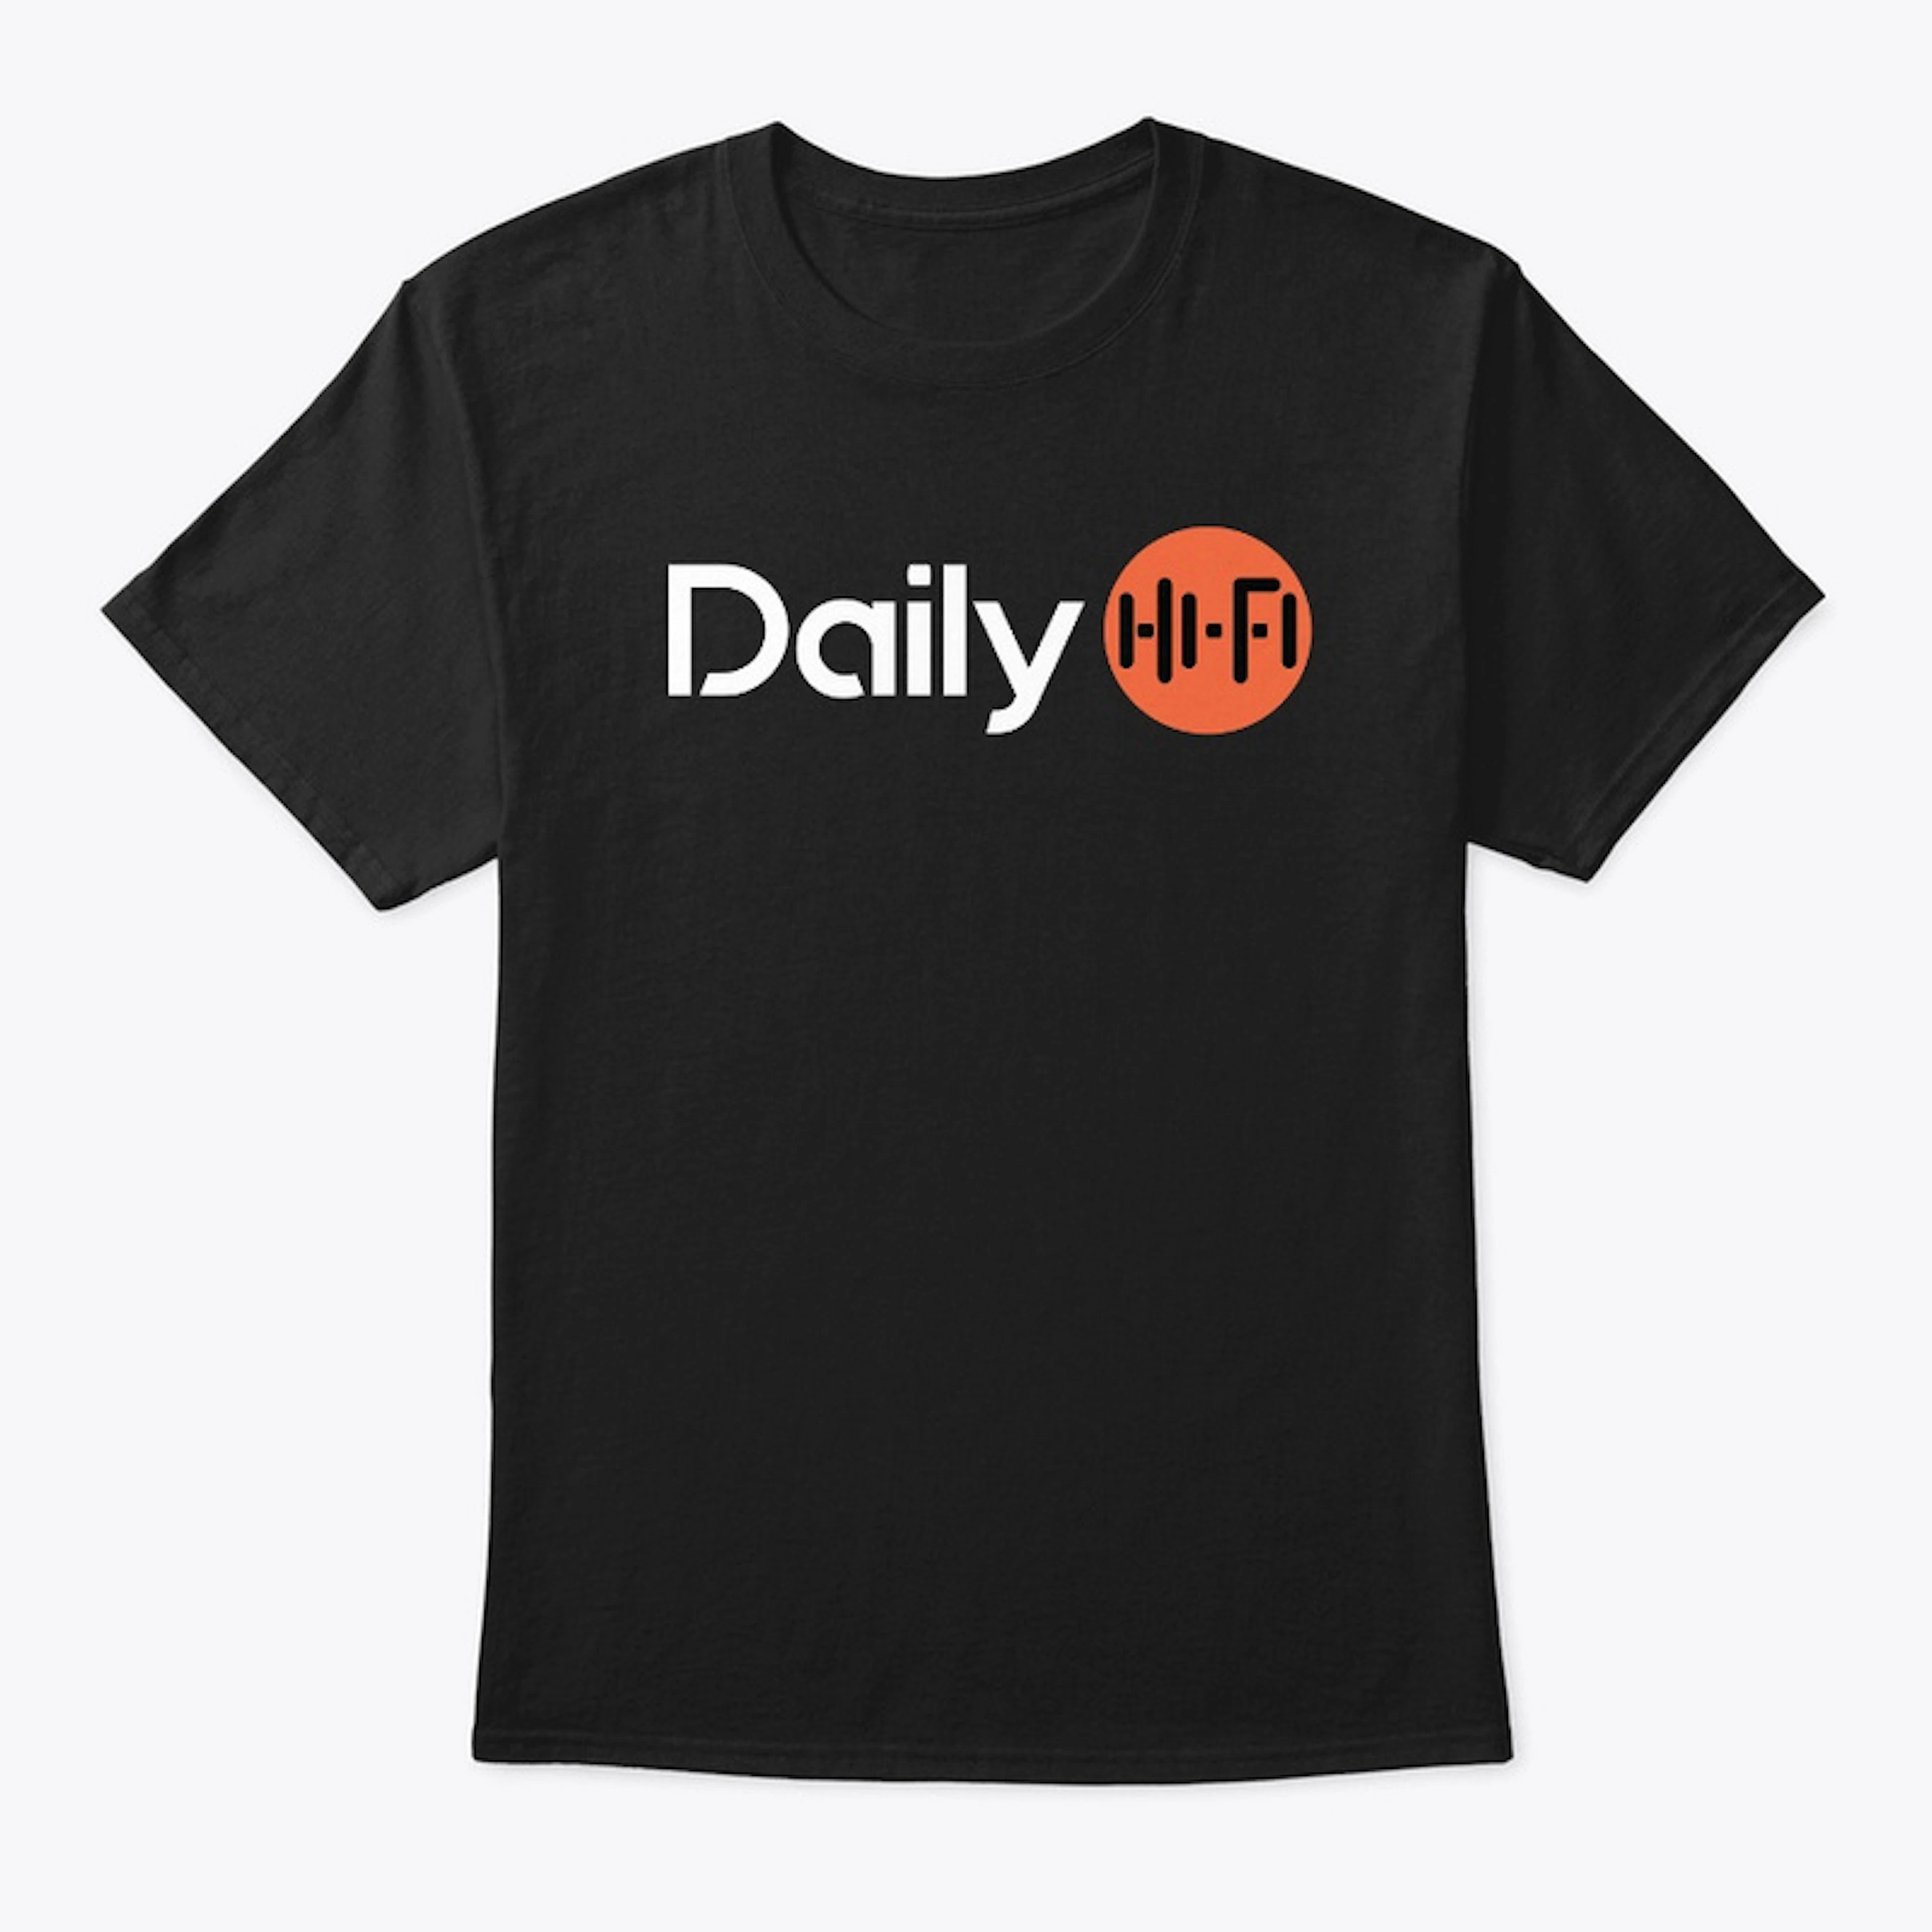 Daily HiFi Crew T-Shirt